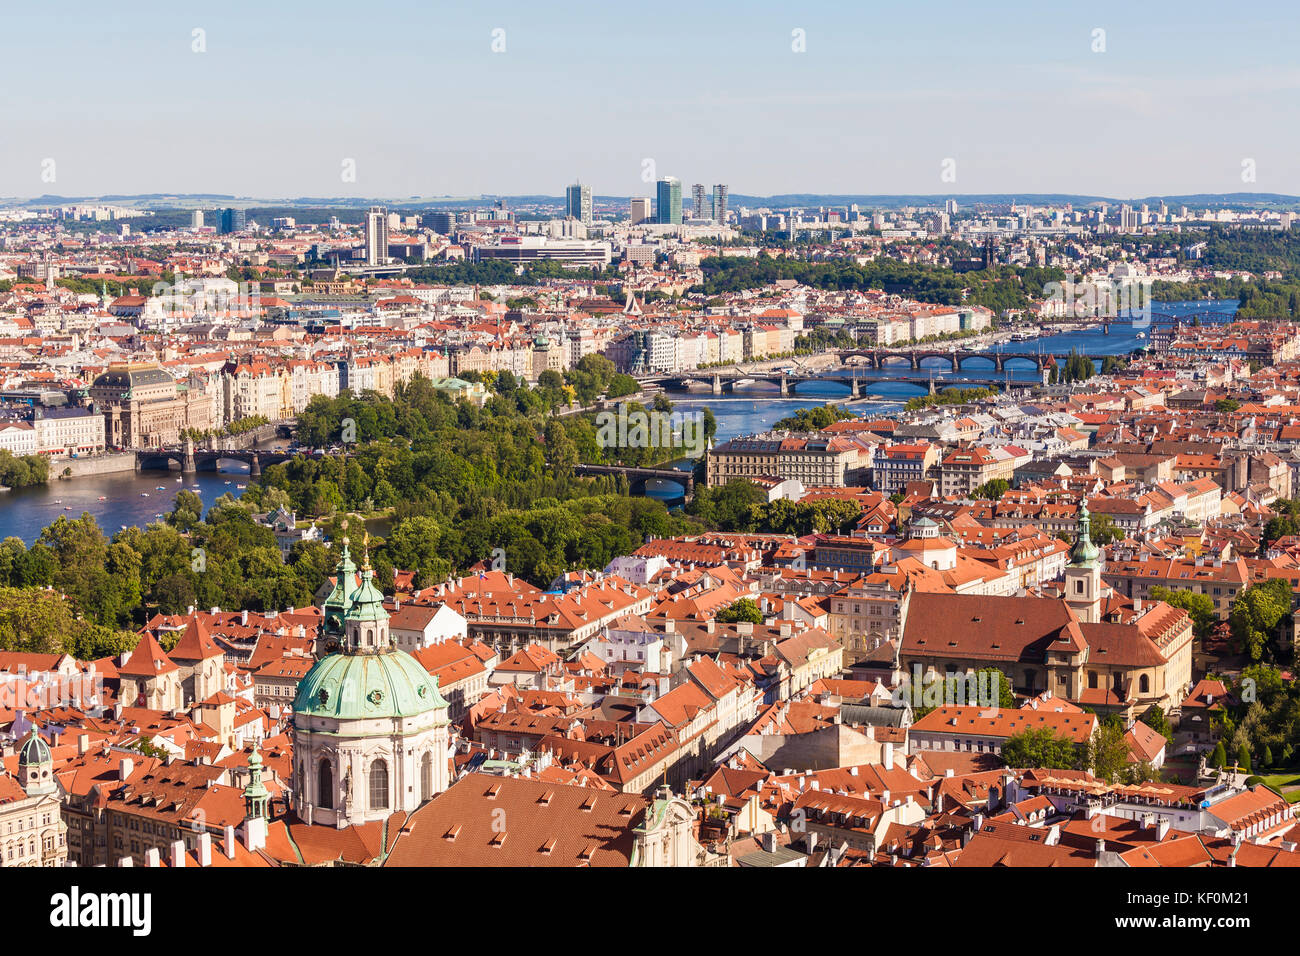 Tschechien, Prag, Stadtansicht, Blick über Kleinseite und Altstadt, Moldau, Moldau-Ufer, Brücken Stock Photo